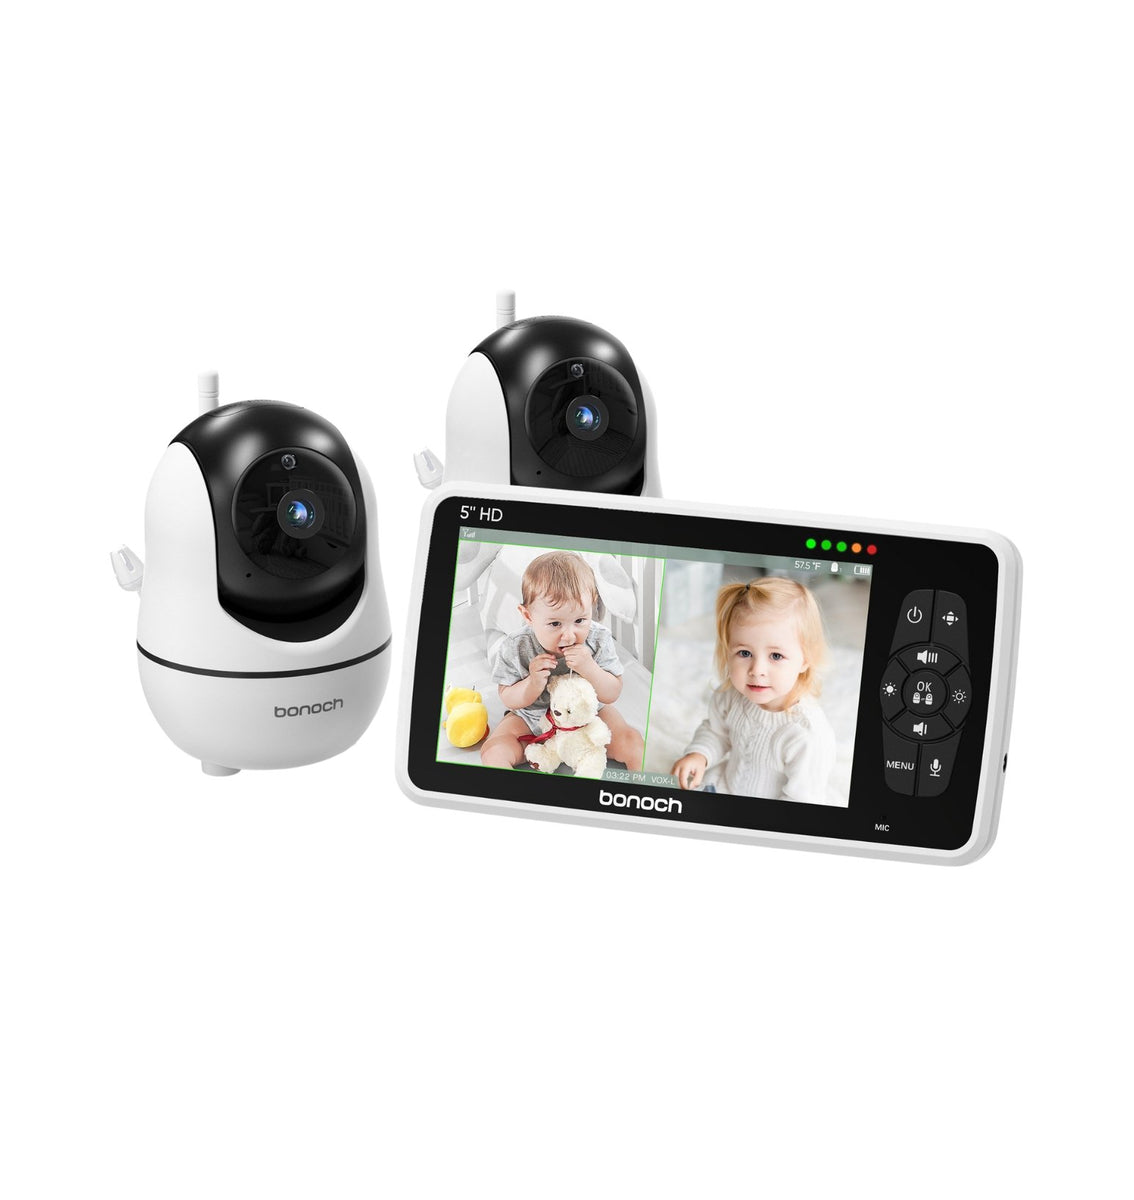 Moniteur vidéo pour bébé Motorola - 2 Caméras HD Algeria